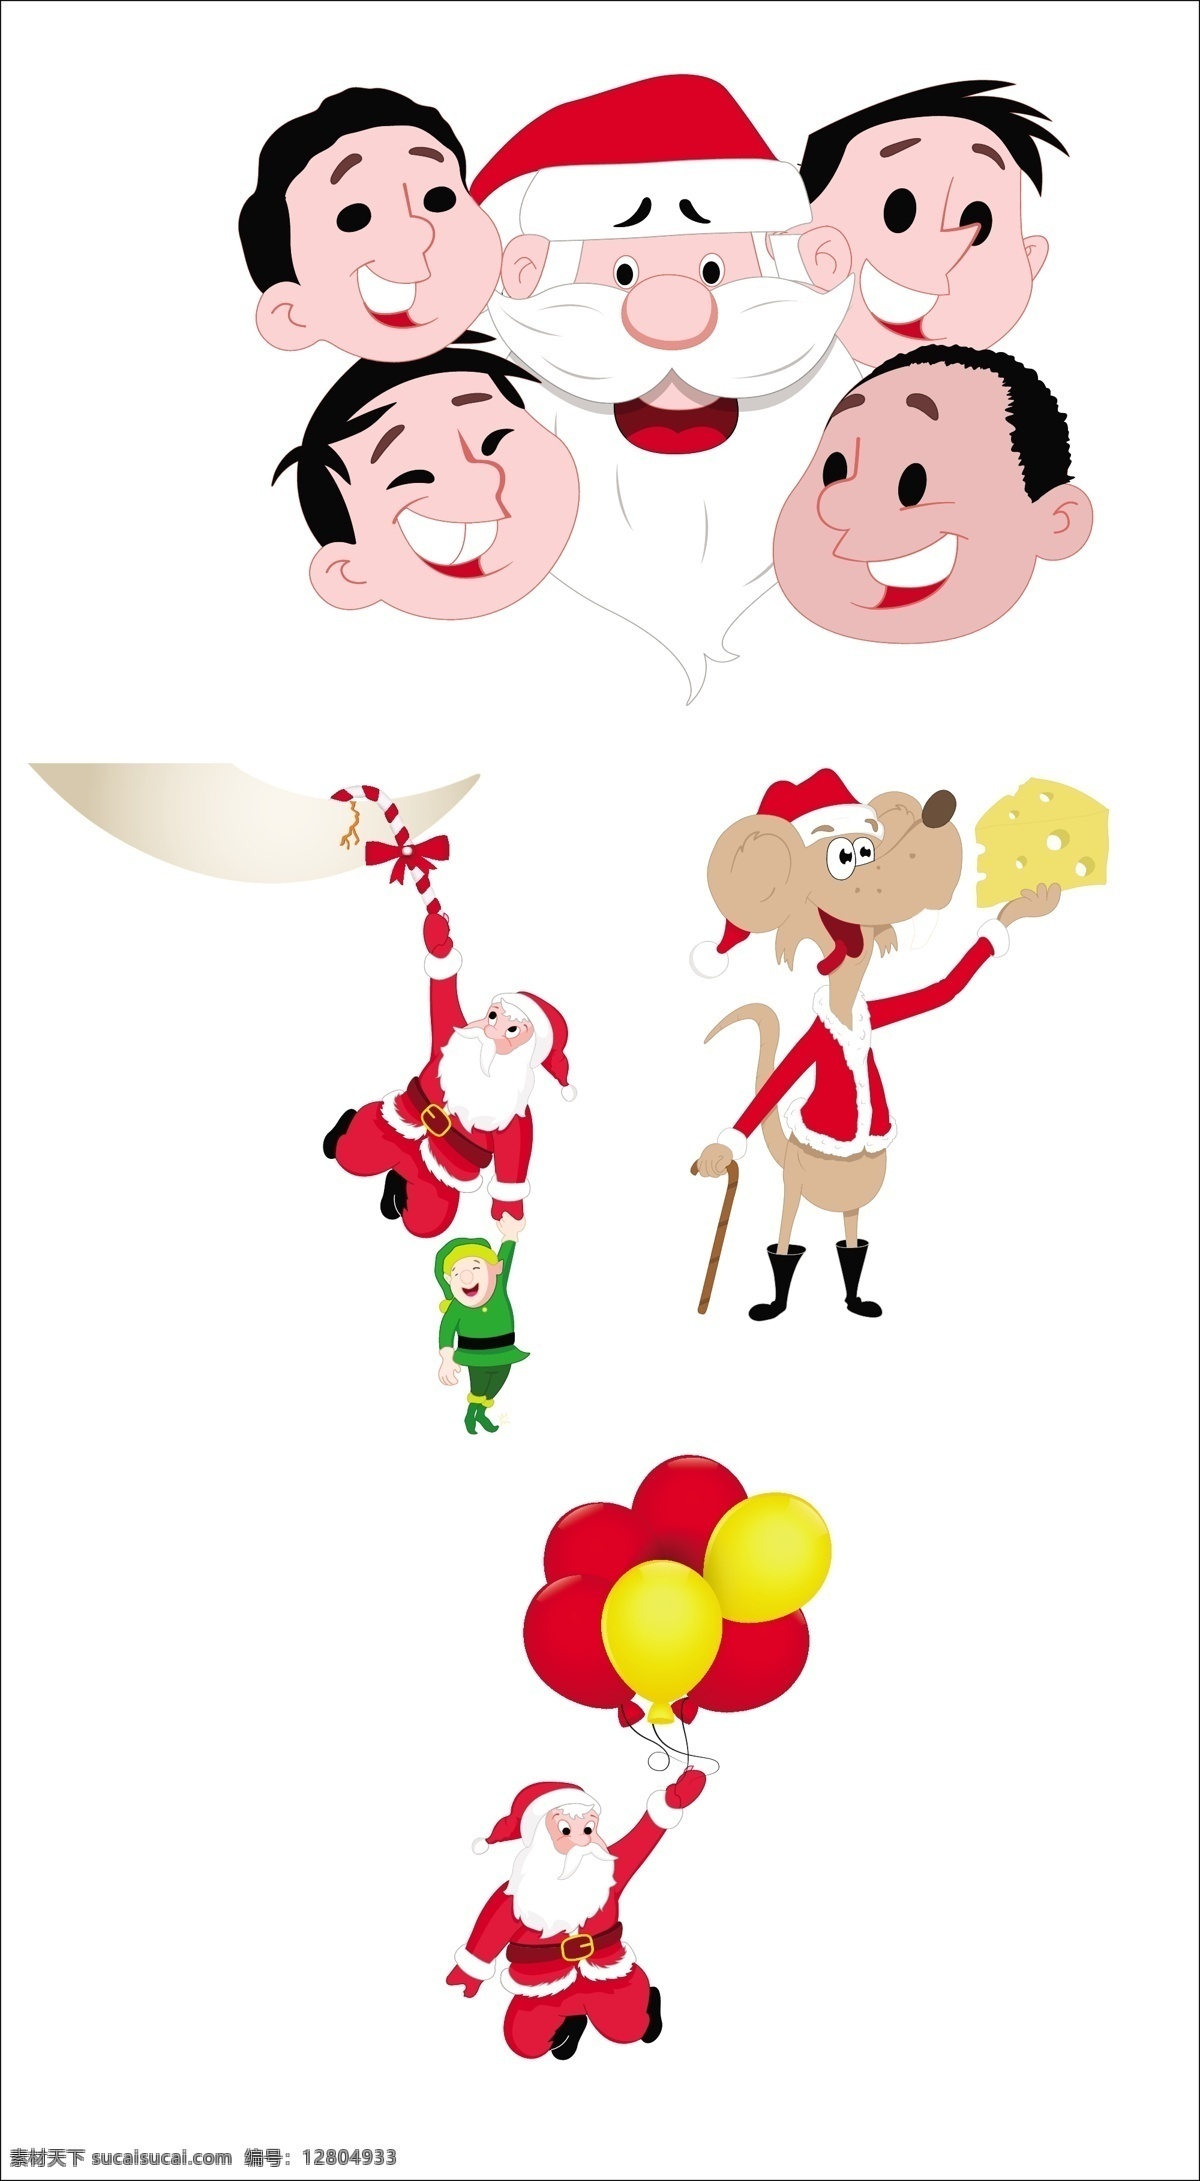 气球 圣诞老人 孩子 圣诞节 时尚花纹 花纹 边框 背景图案 卡通形象 矢量人物 矢量素材 白色